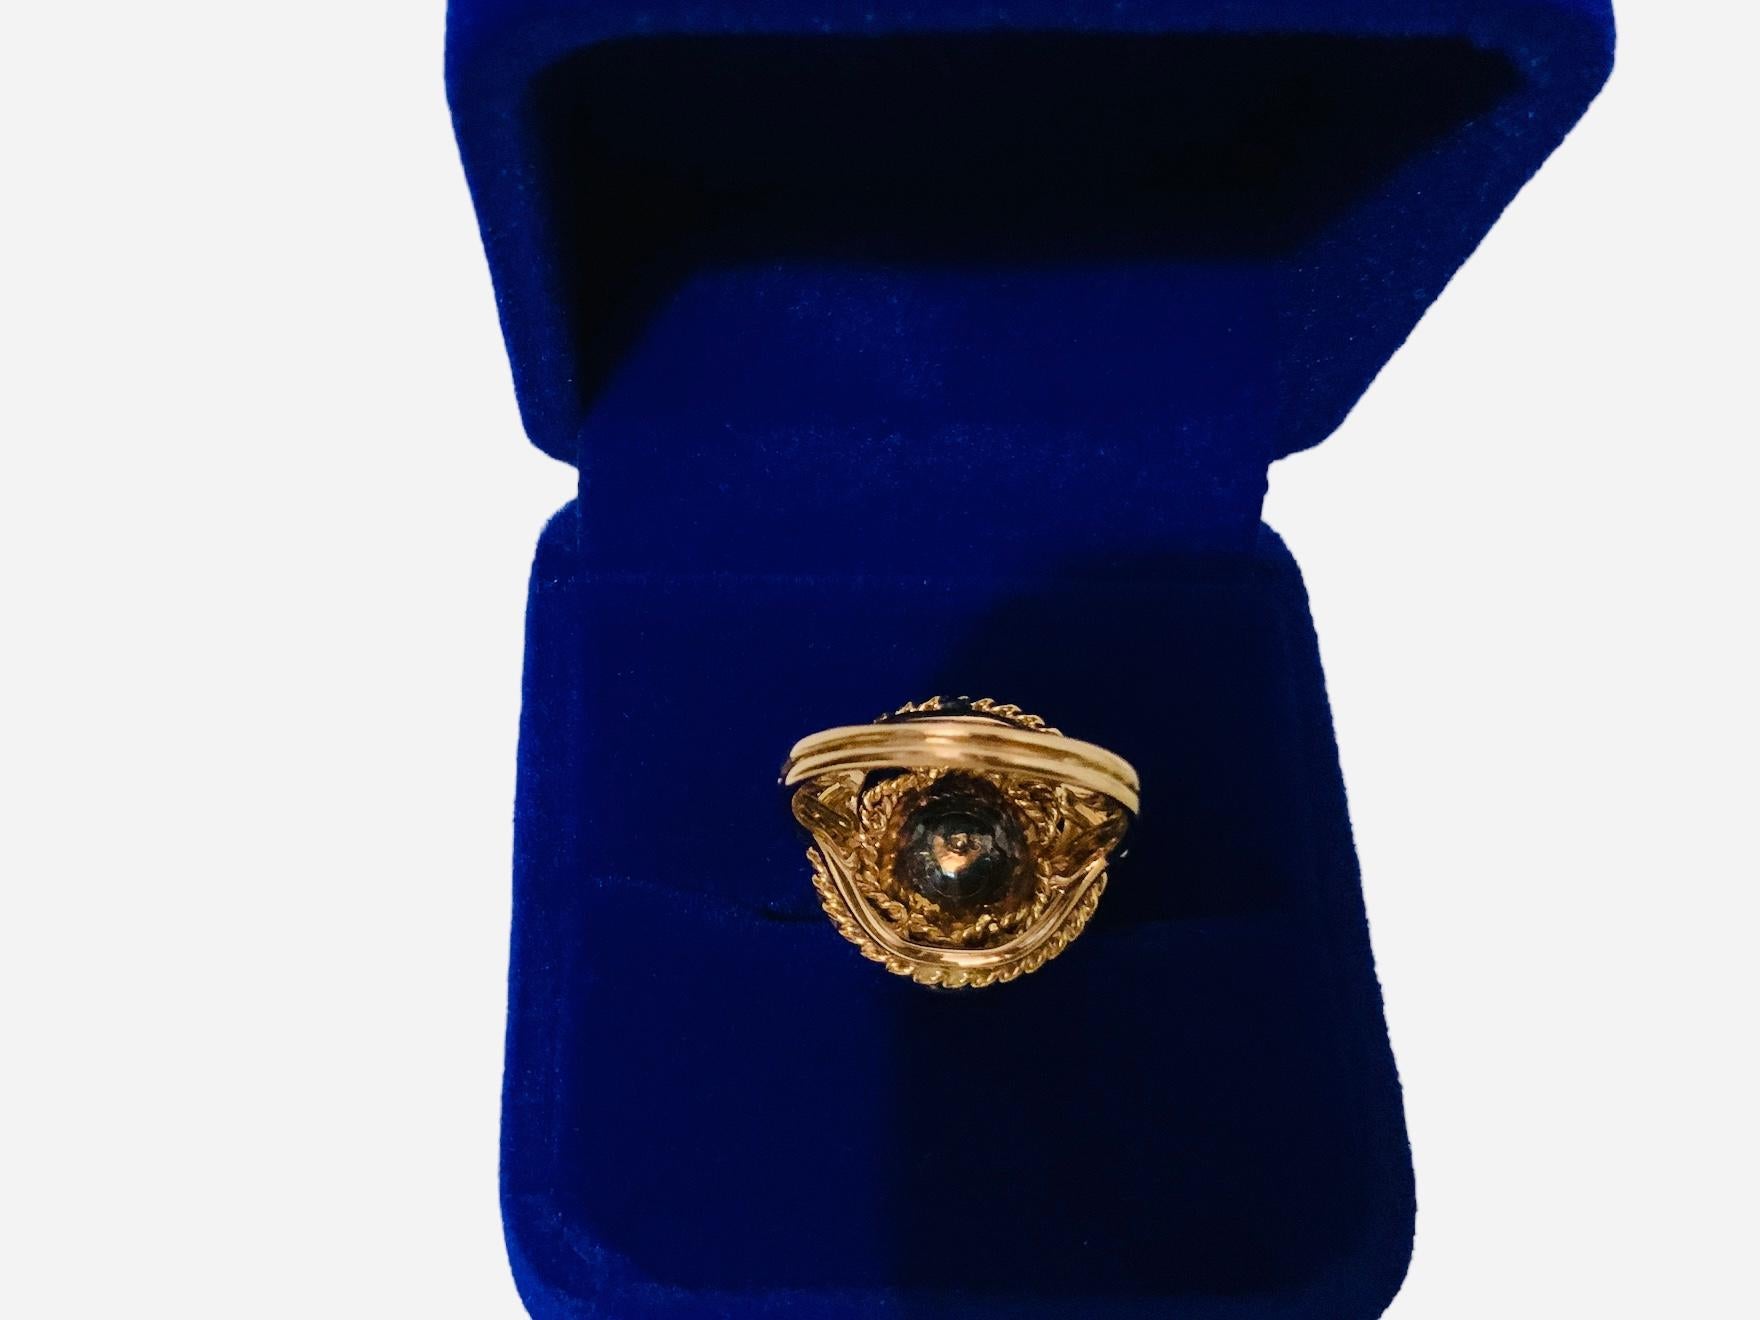 Il s'agit d'une bague de cocktail en or 18 carats à motif de fleur. Il s'agit d'un anneau en forme de dôme à quatre niveaux différents. Le niveau inférieur est constitué d'une corde en or. Le troisième est constitué d'une guirlande d'or suivie de